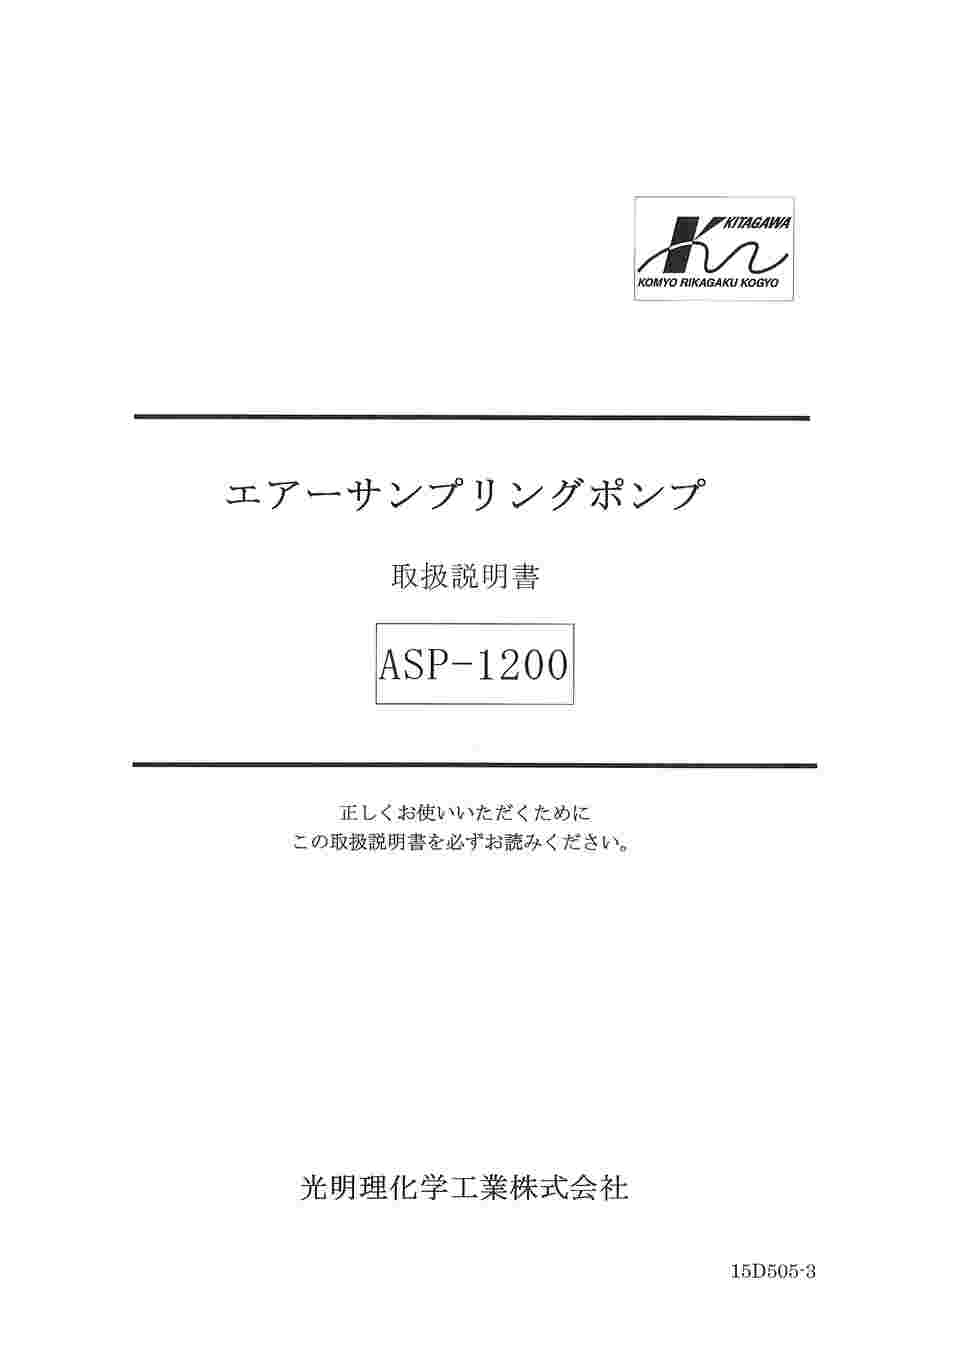 65-0320-35 エアーサンプリングポンプ ASP-1200 【AXEL】 アズワン